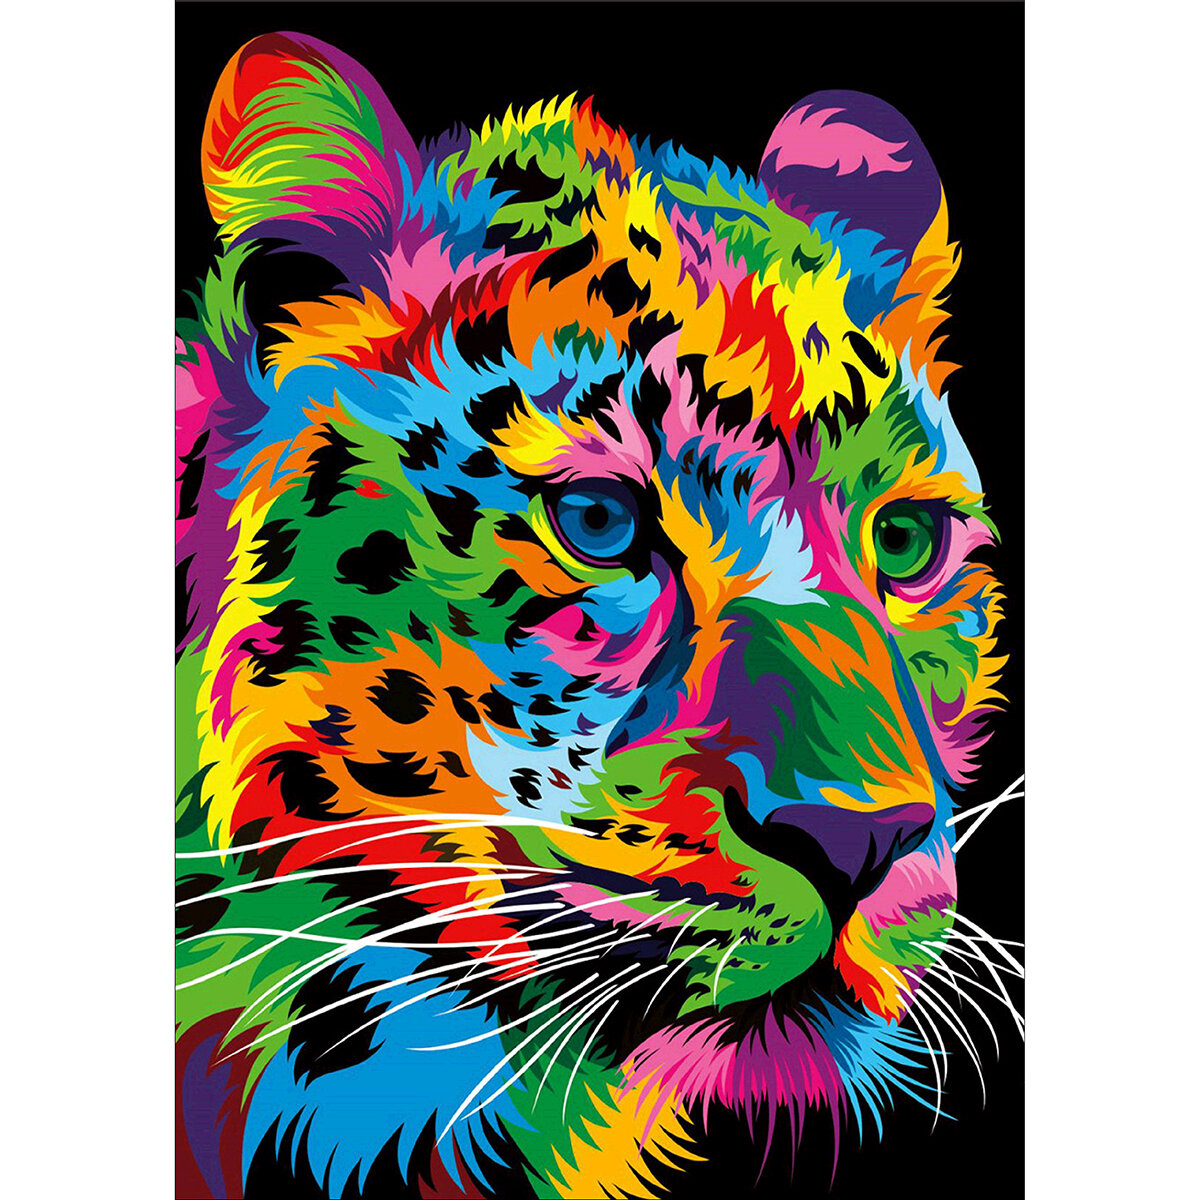 

DIY 5D алмазная живопись леопард, тигр, лев, волк, художественное ремесло, вышивка, Набор, украшения ручной работы, пода